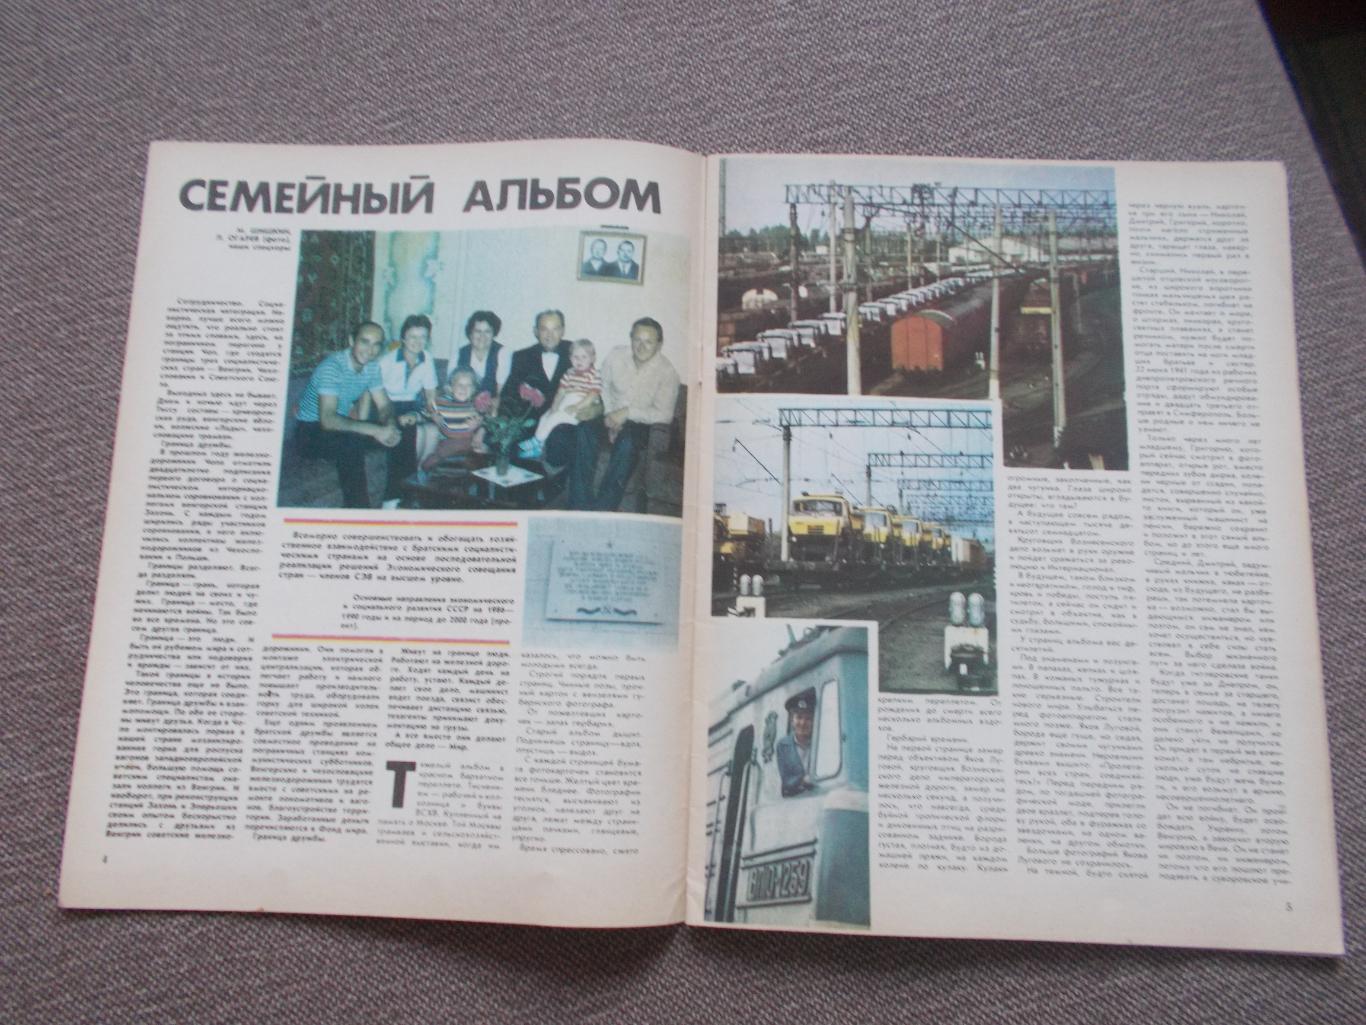 Журнал СССР :Ровесник№ 2 (февраль) 1986 г. (Молодежный музыкальный журнал) 7